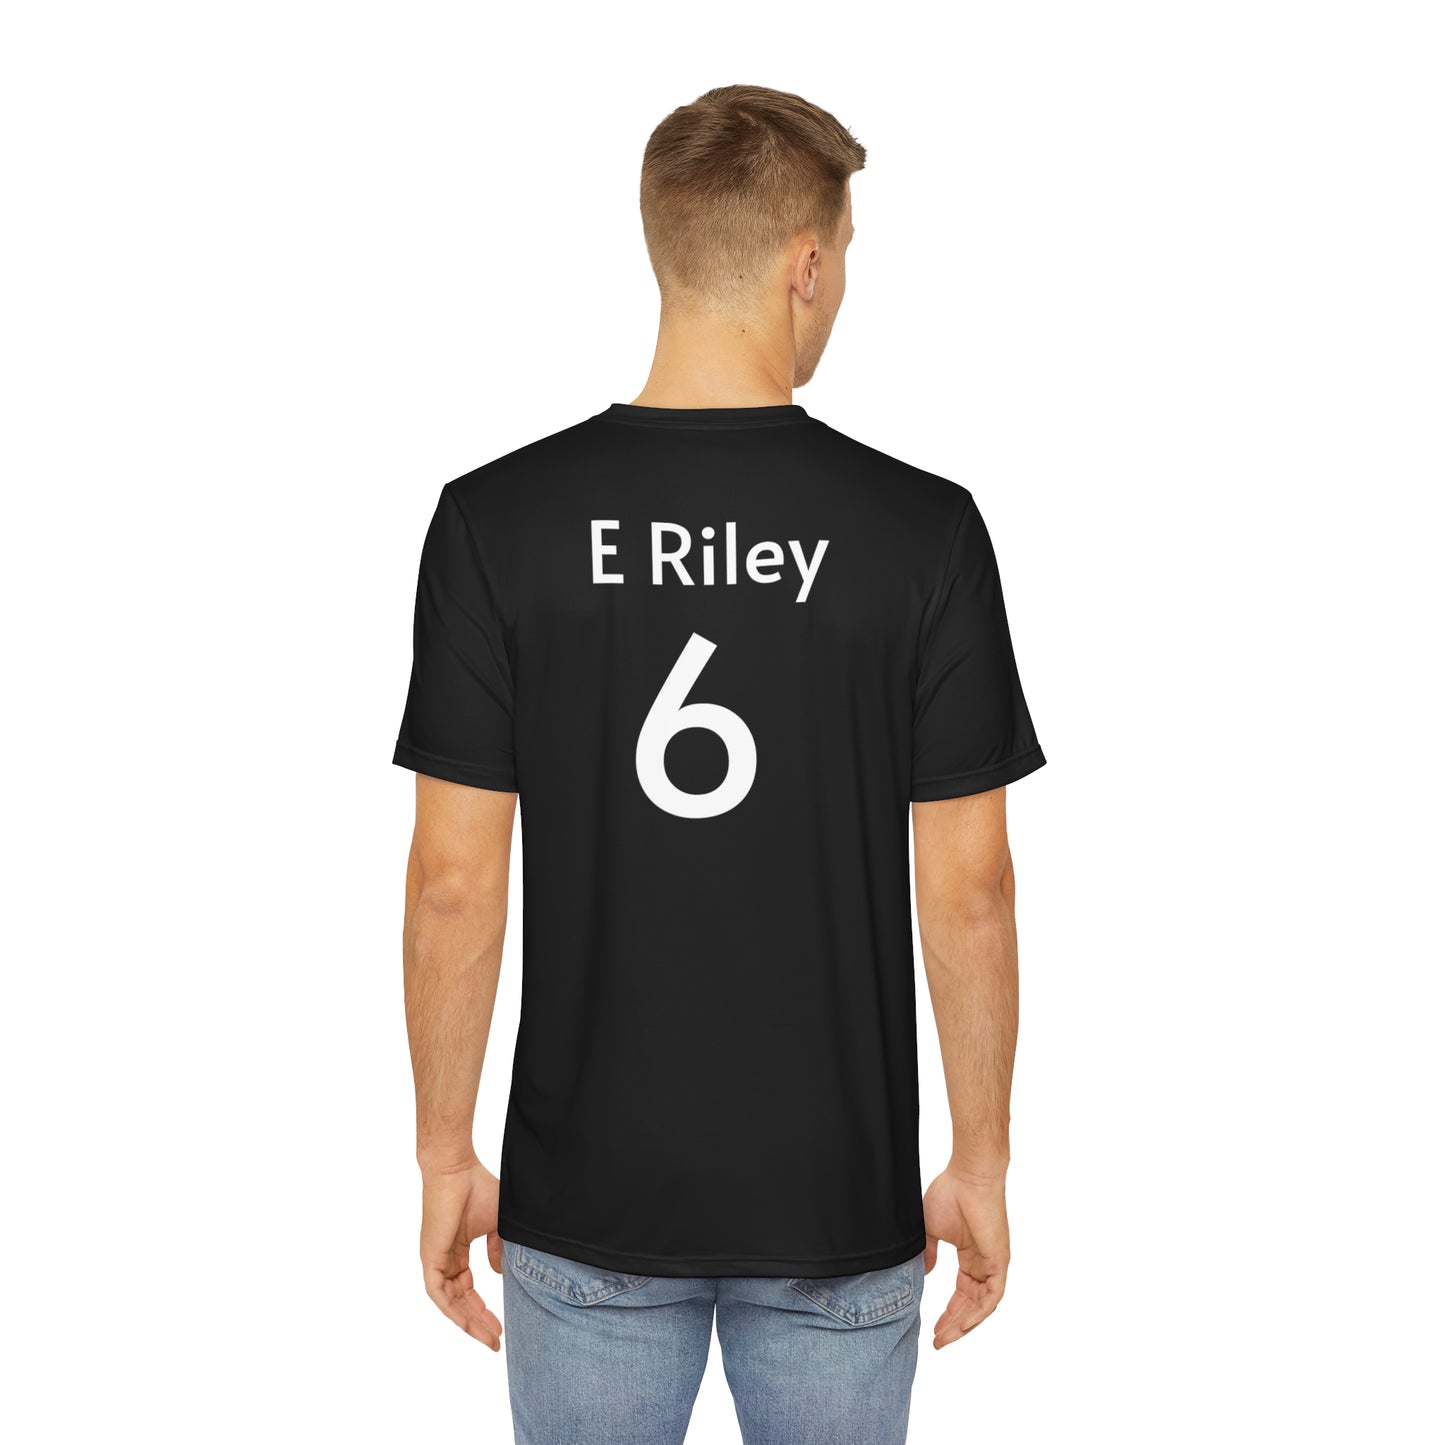 E Riley Team shirt